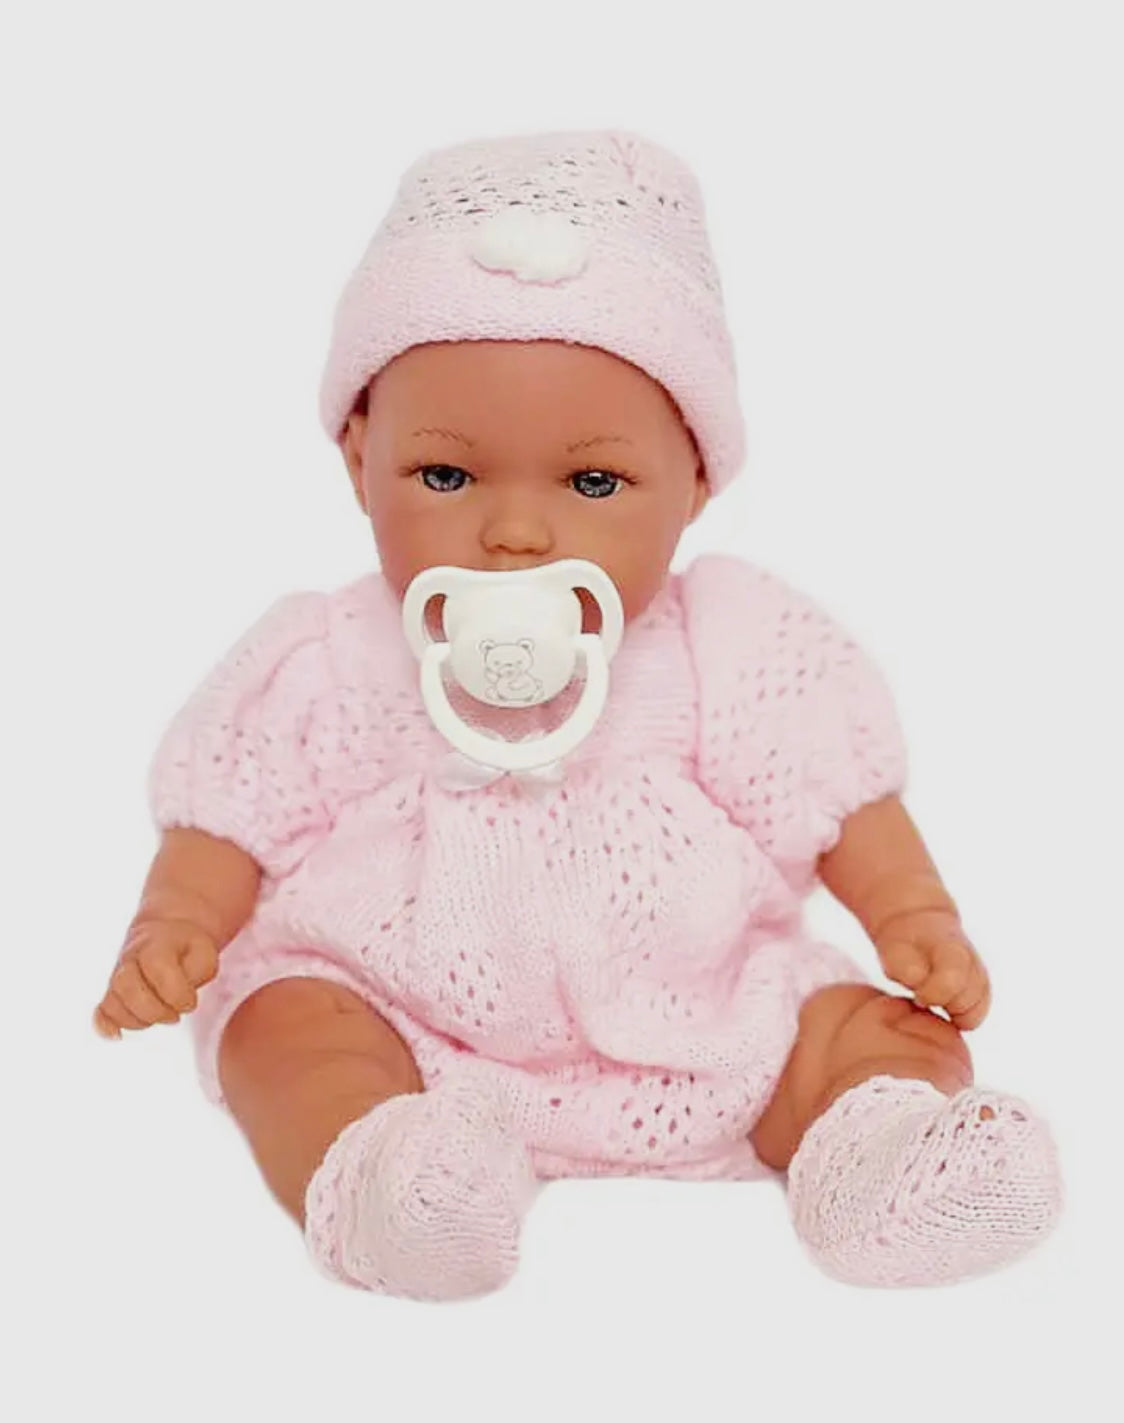 Baby Doll - Ann Lauren Dolls